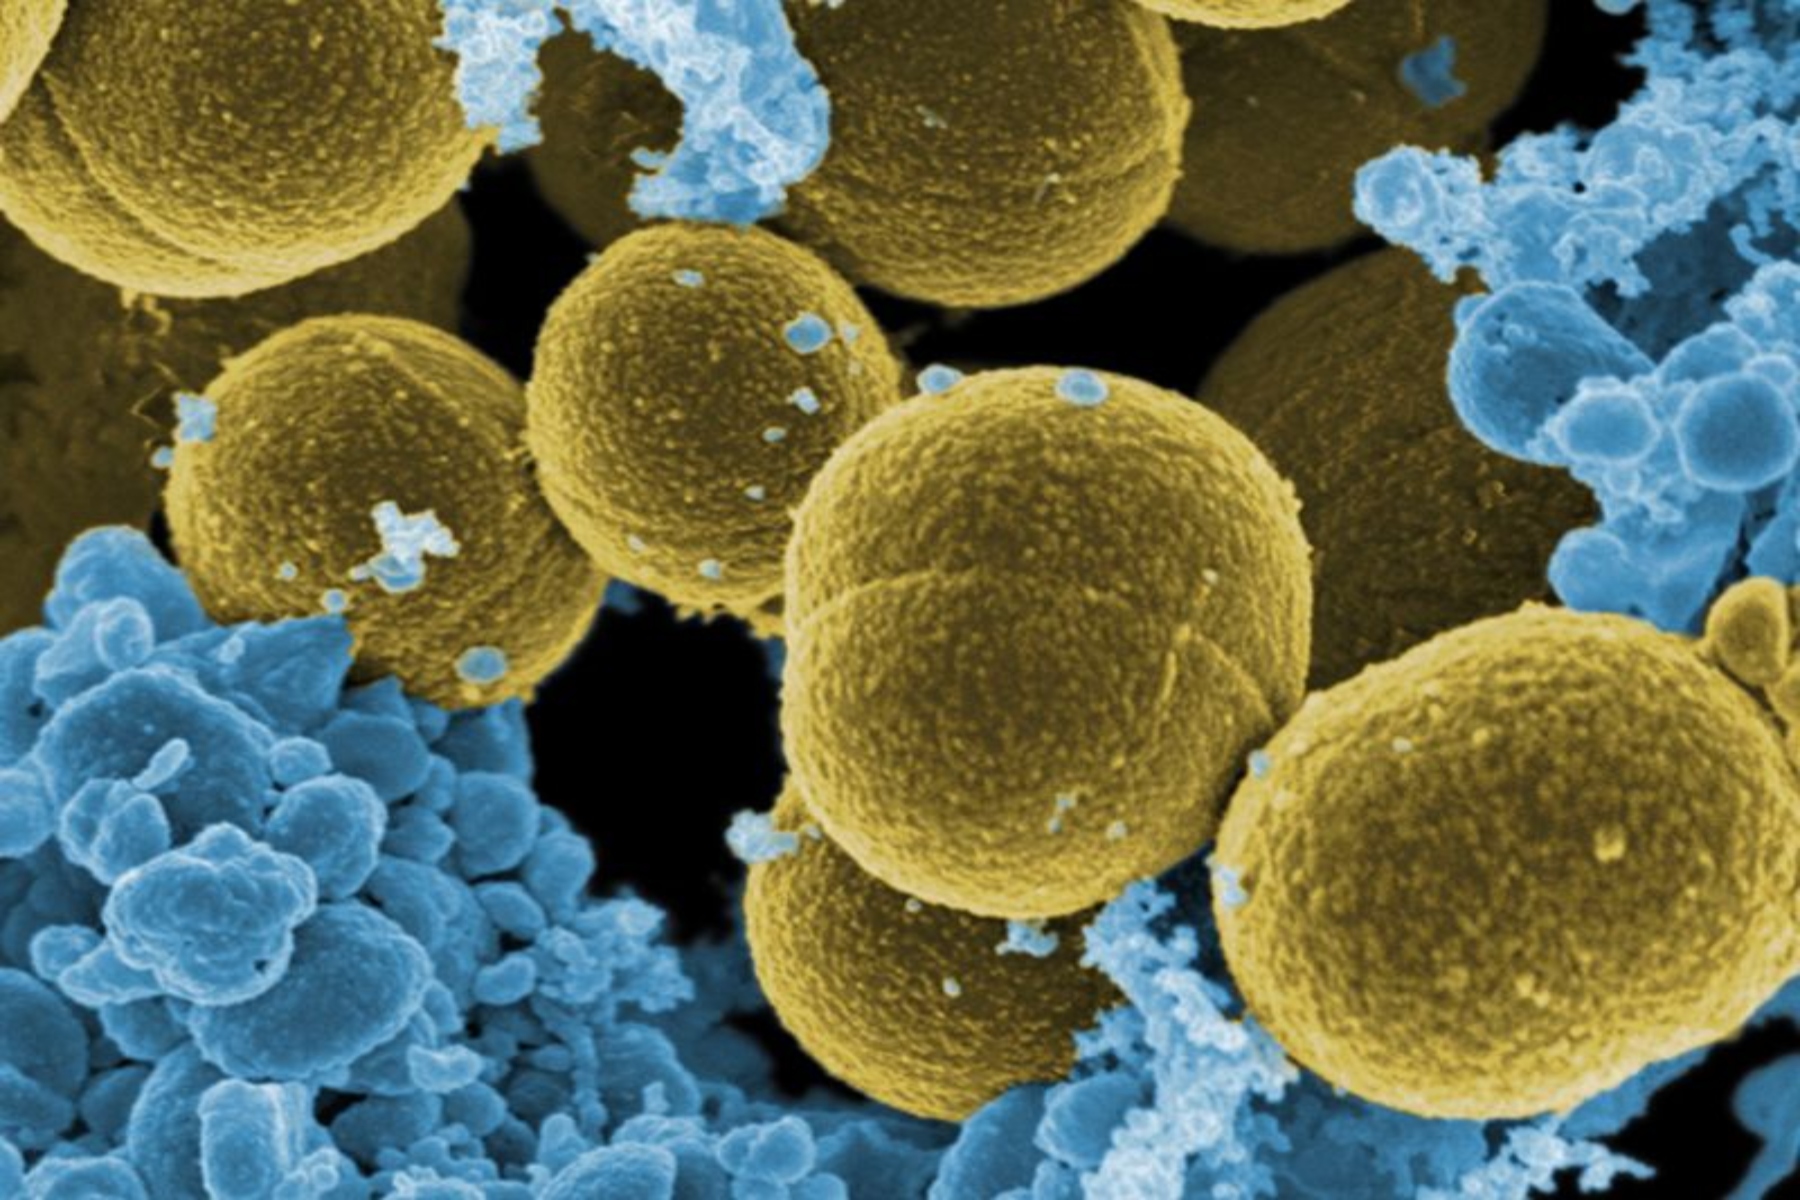 Ερευνητές μικρόβια: Καινούργιο εργαλείο δημόσιας αναζήτησης που αντιστοιχίζει τα μικρόβια με τους μεταβολίτες